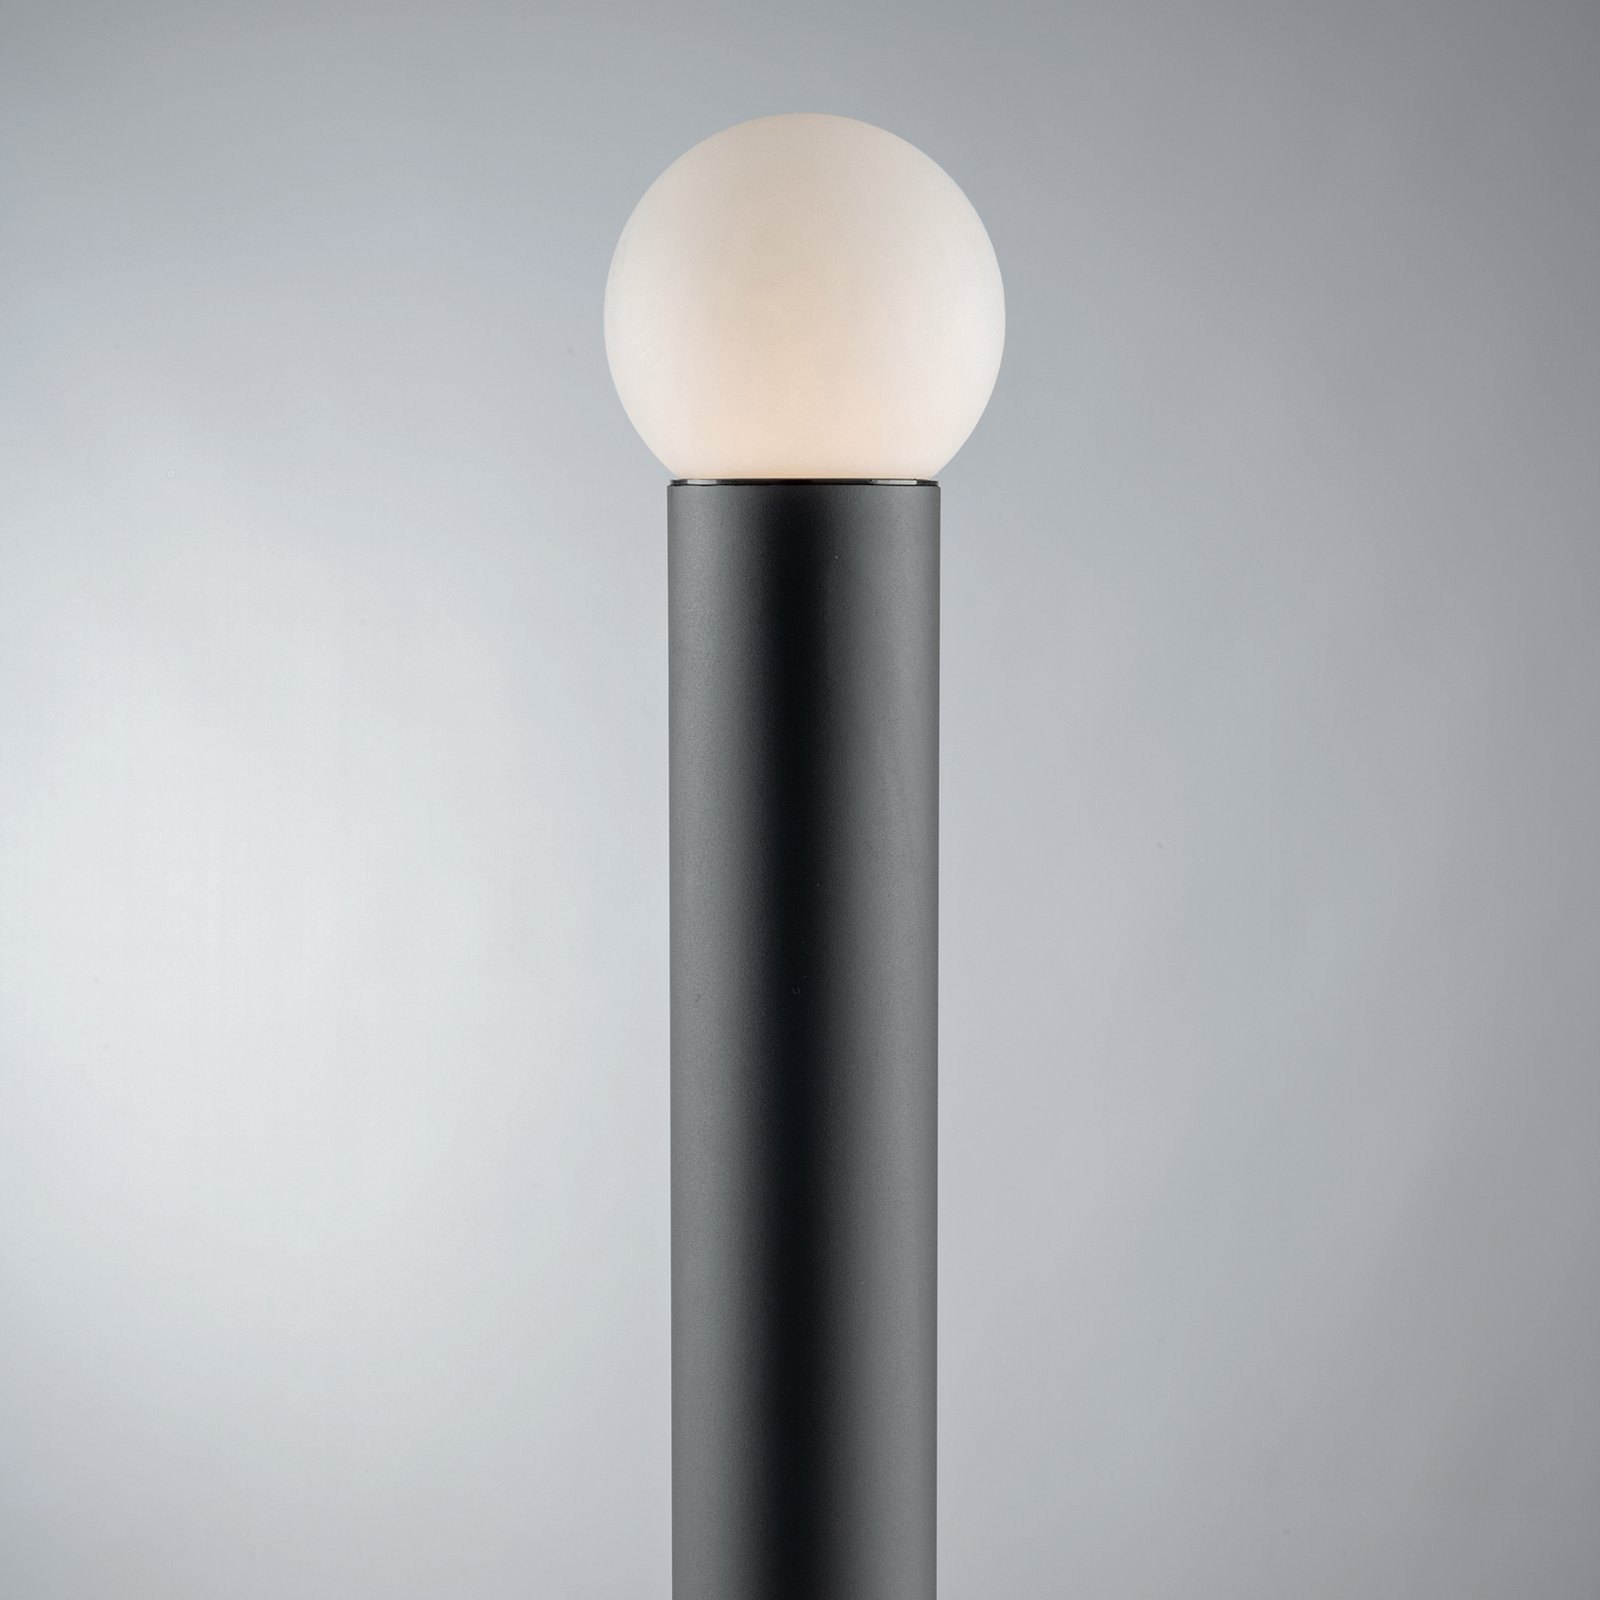 Tuinpadverlichting Skittle met bolvormige kap, hoogte 65 cm